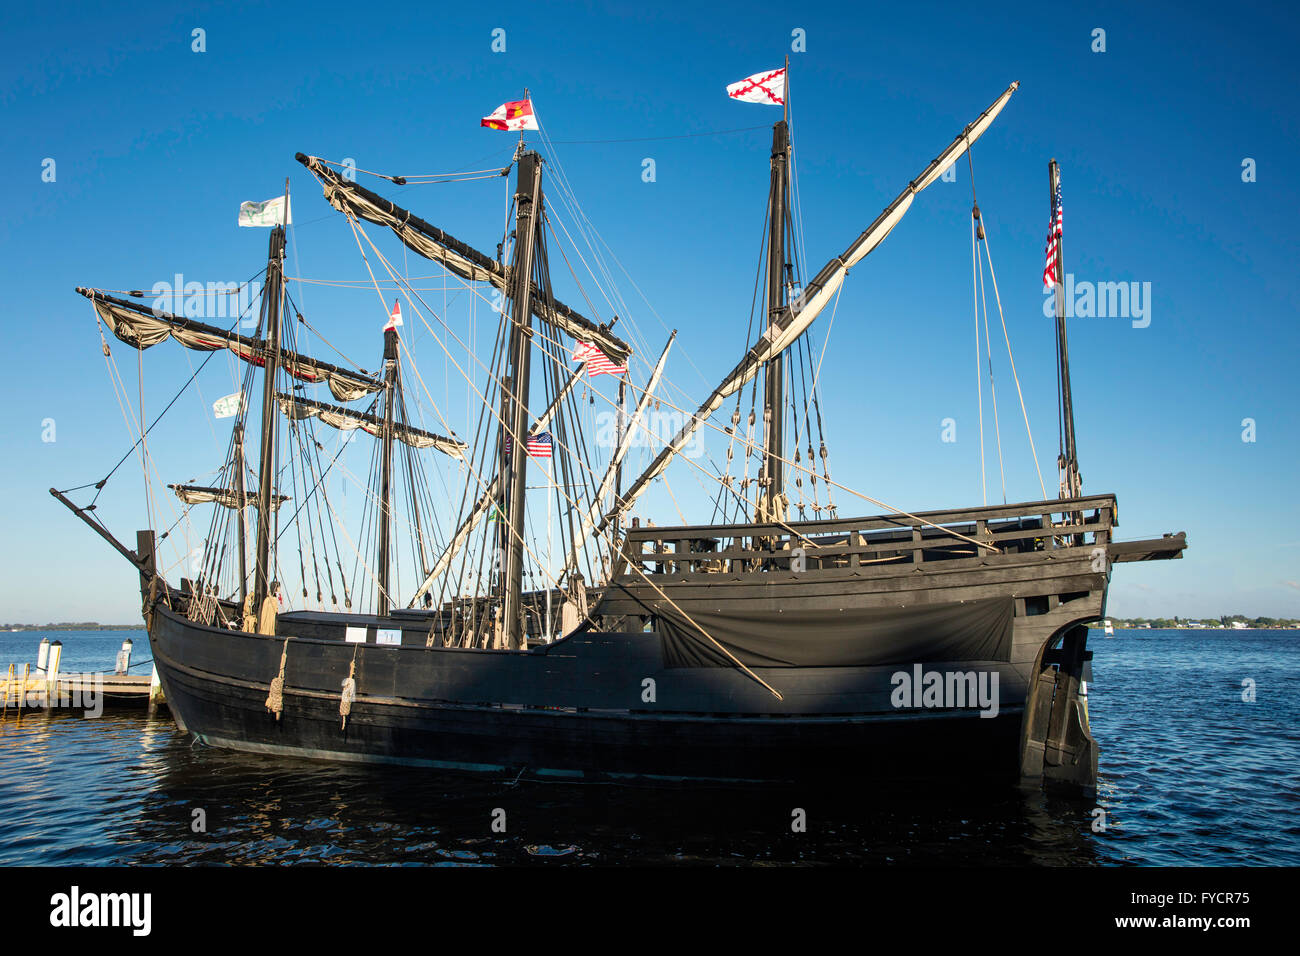 Des répliques de navires de Christophe Colomb, Nina et pinta docked in Fort Myers, Florida, USA Banque D'Images